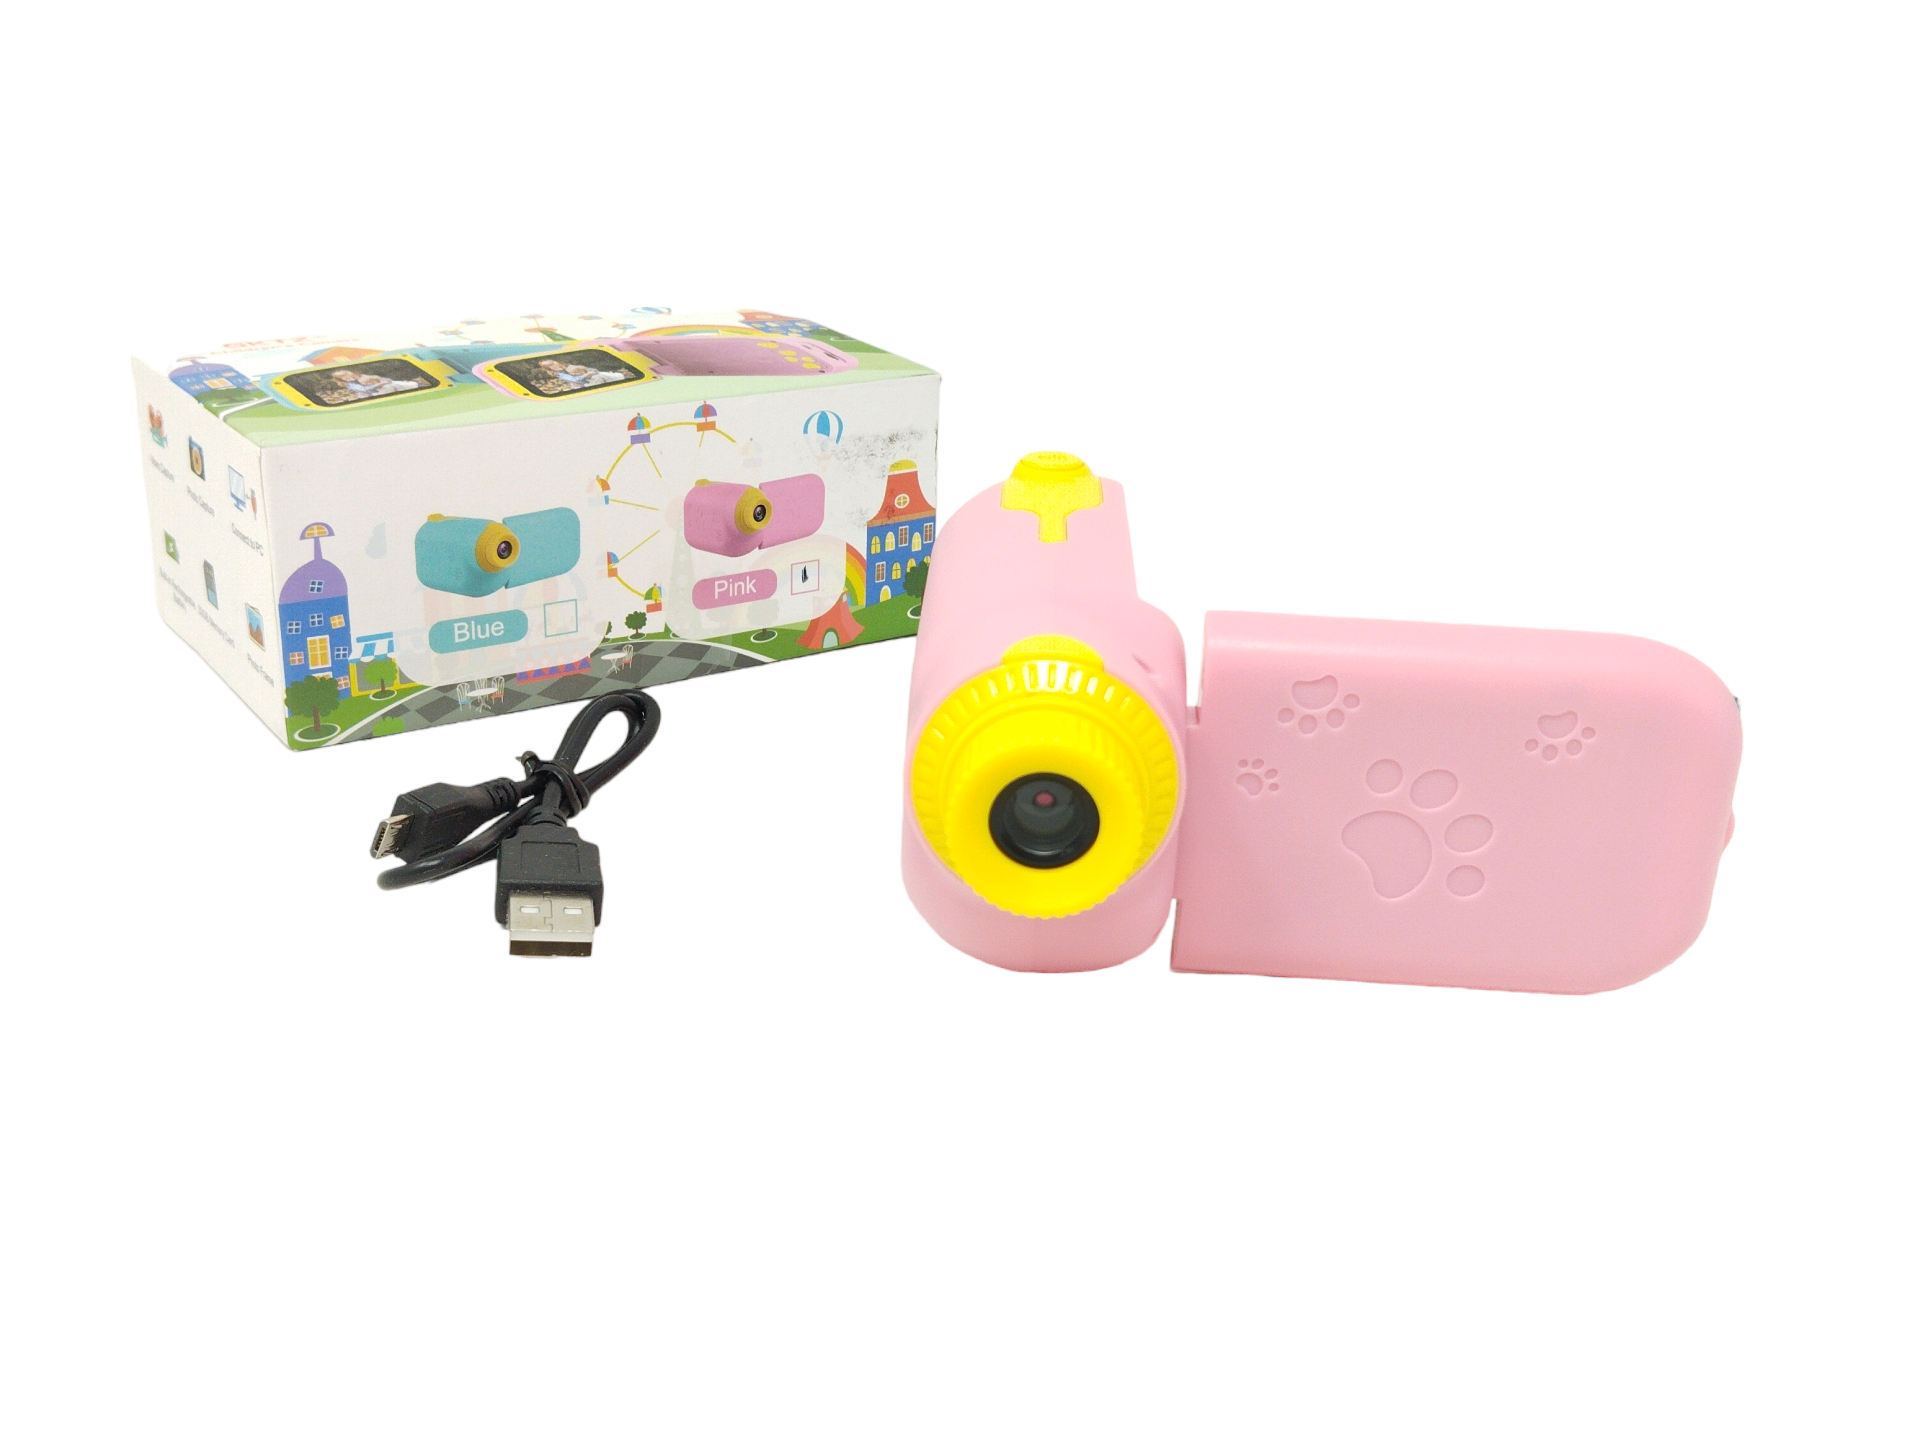 (B) GKTZ Kinder-Camcorder, Kinder-Digitalkamera, wiederaufladbar, 6,1 cm (2,4 Zoll) HD-Bildschirm, 1080P mit 32 GB TF-Karte, stoßfest, Kinder-Video